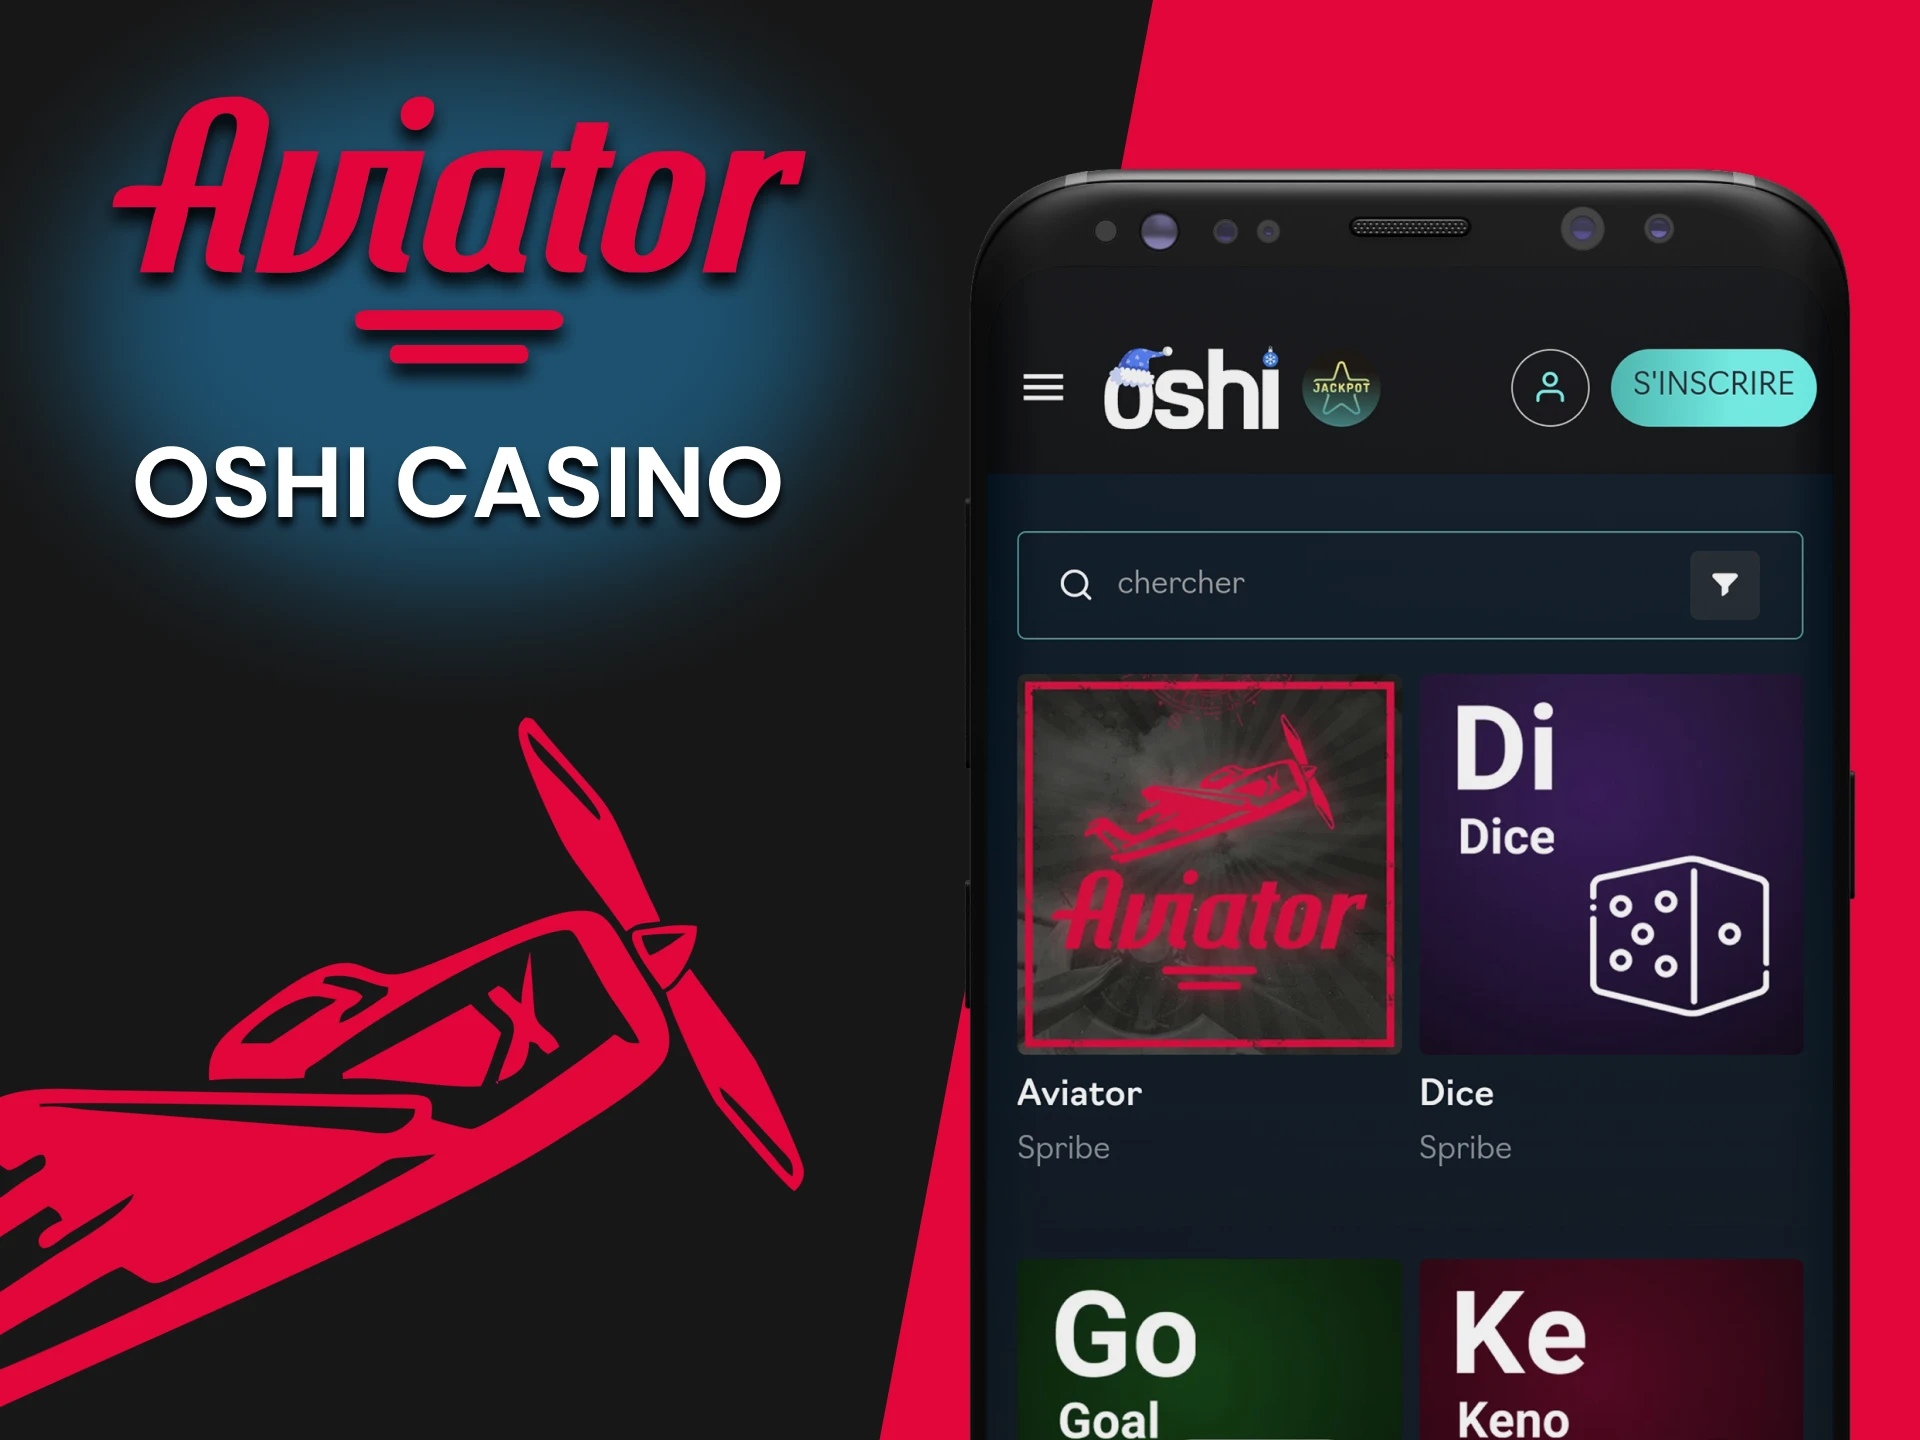 Choisissez une application pour jouer à Aviator de Oshi Casino.